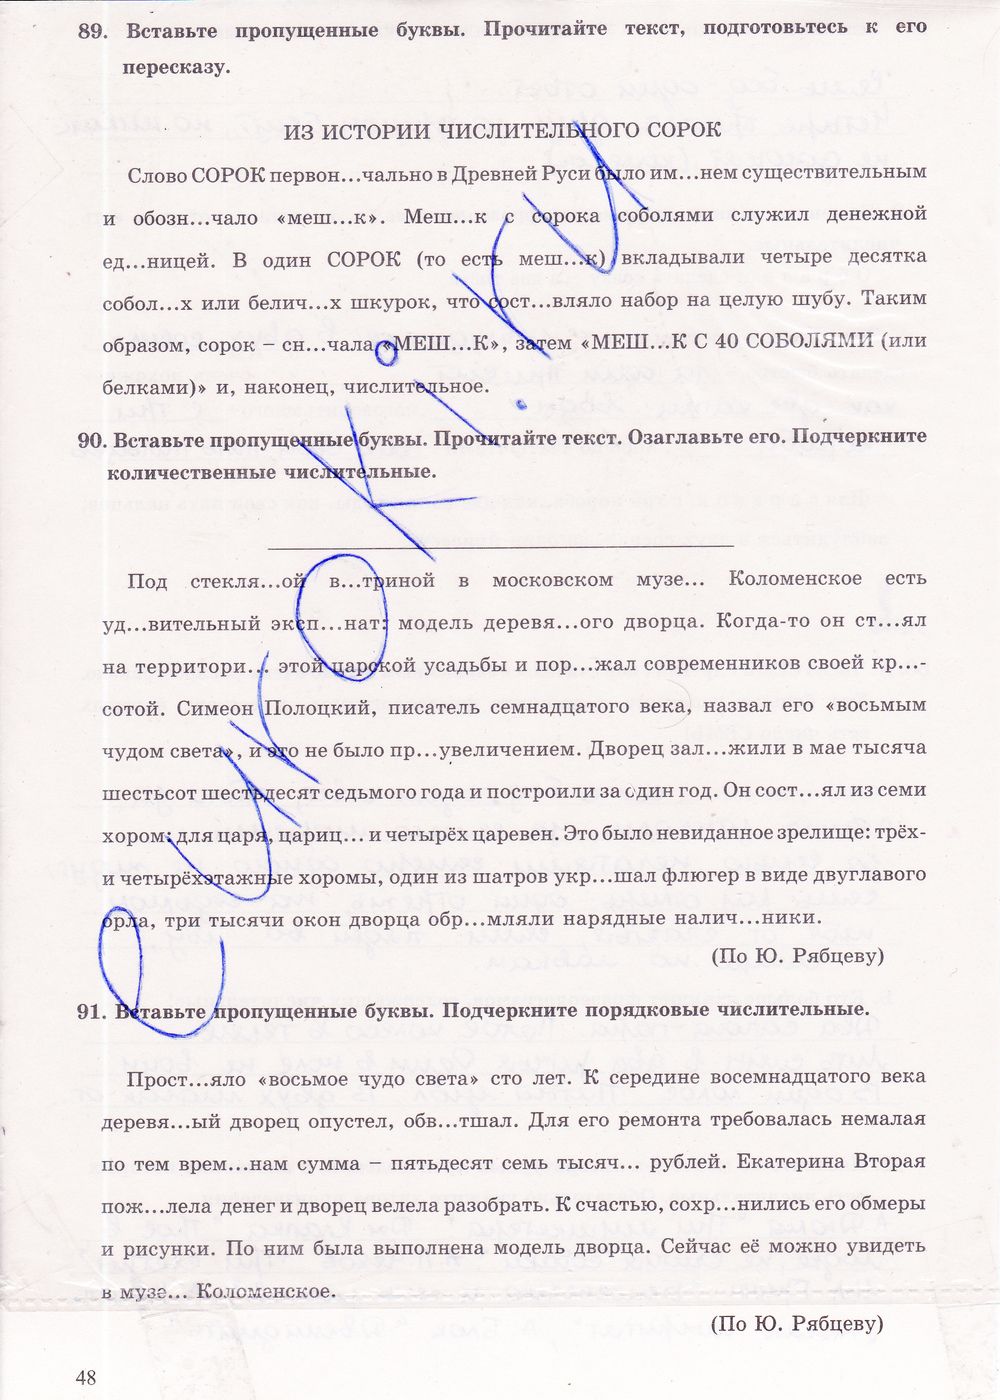 ГДЗ Русский язык 6 класс - стр. 48